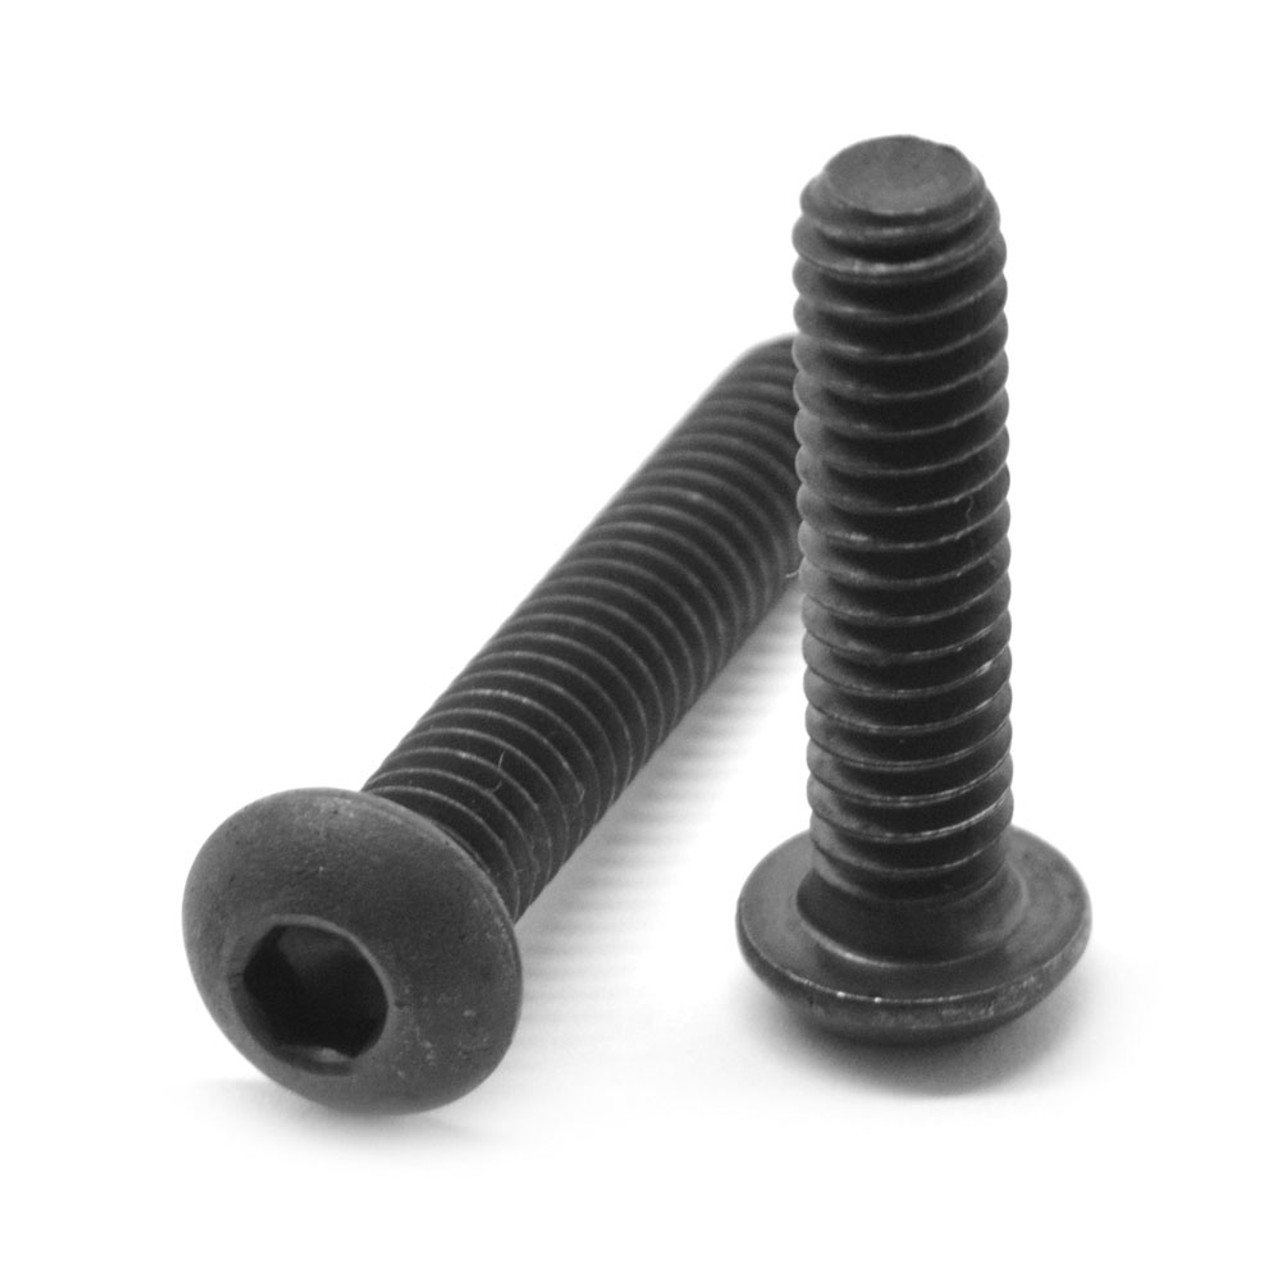 #8-32 x 3/16" (FT) Coarse Thread Socket Button Head Cap Screw Alloy Steel Black Oxide